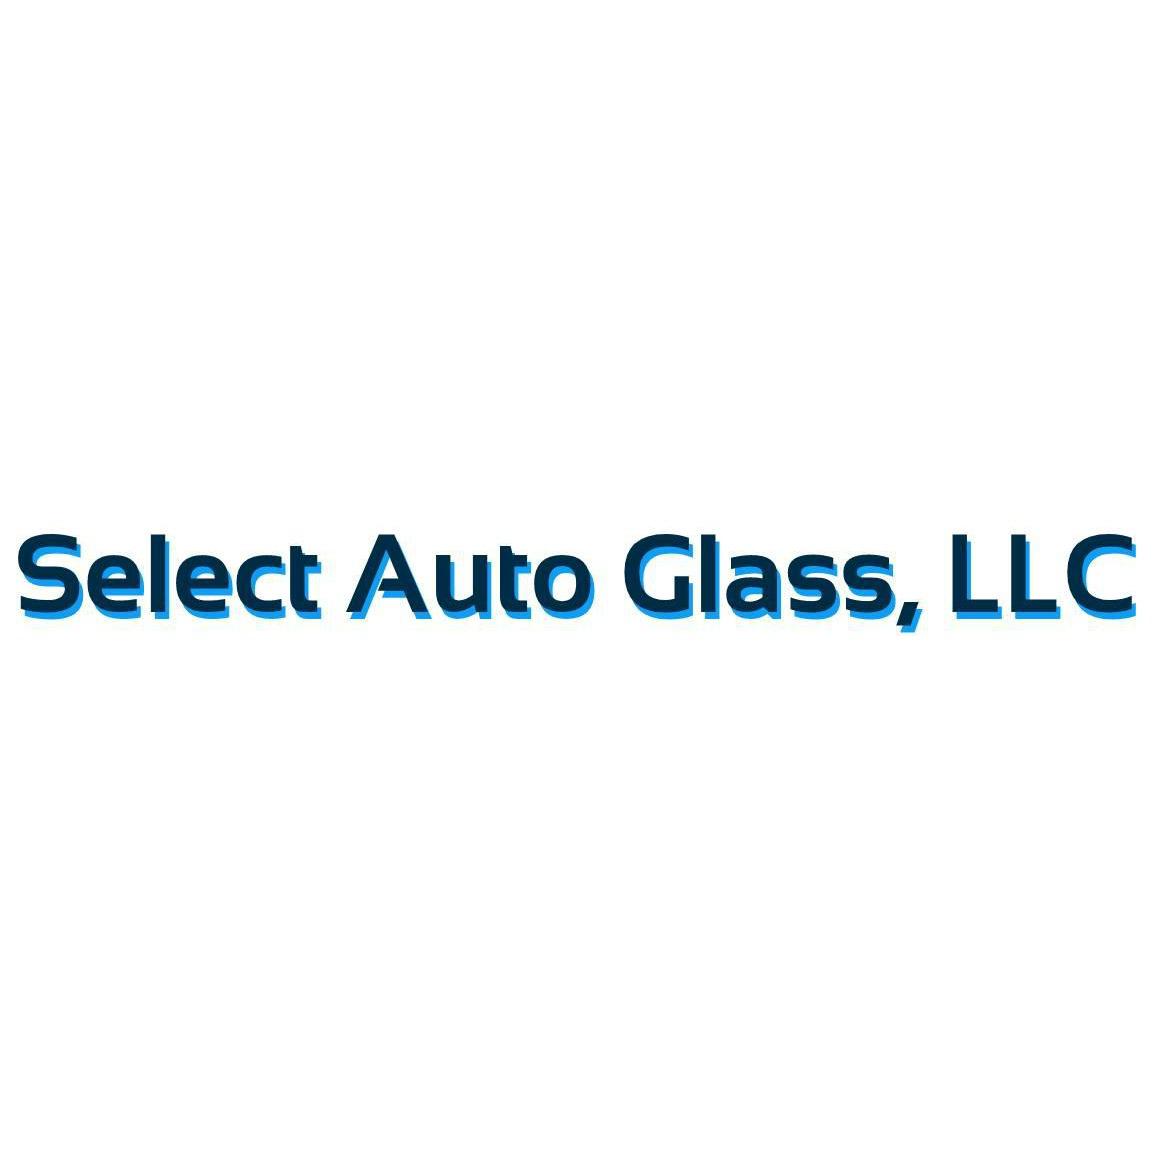 Select Auto Glass